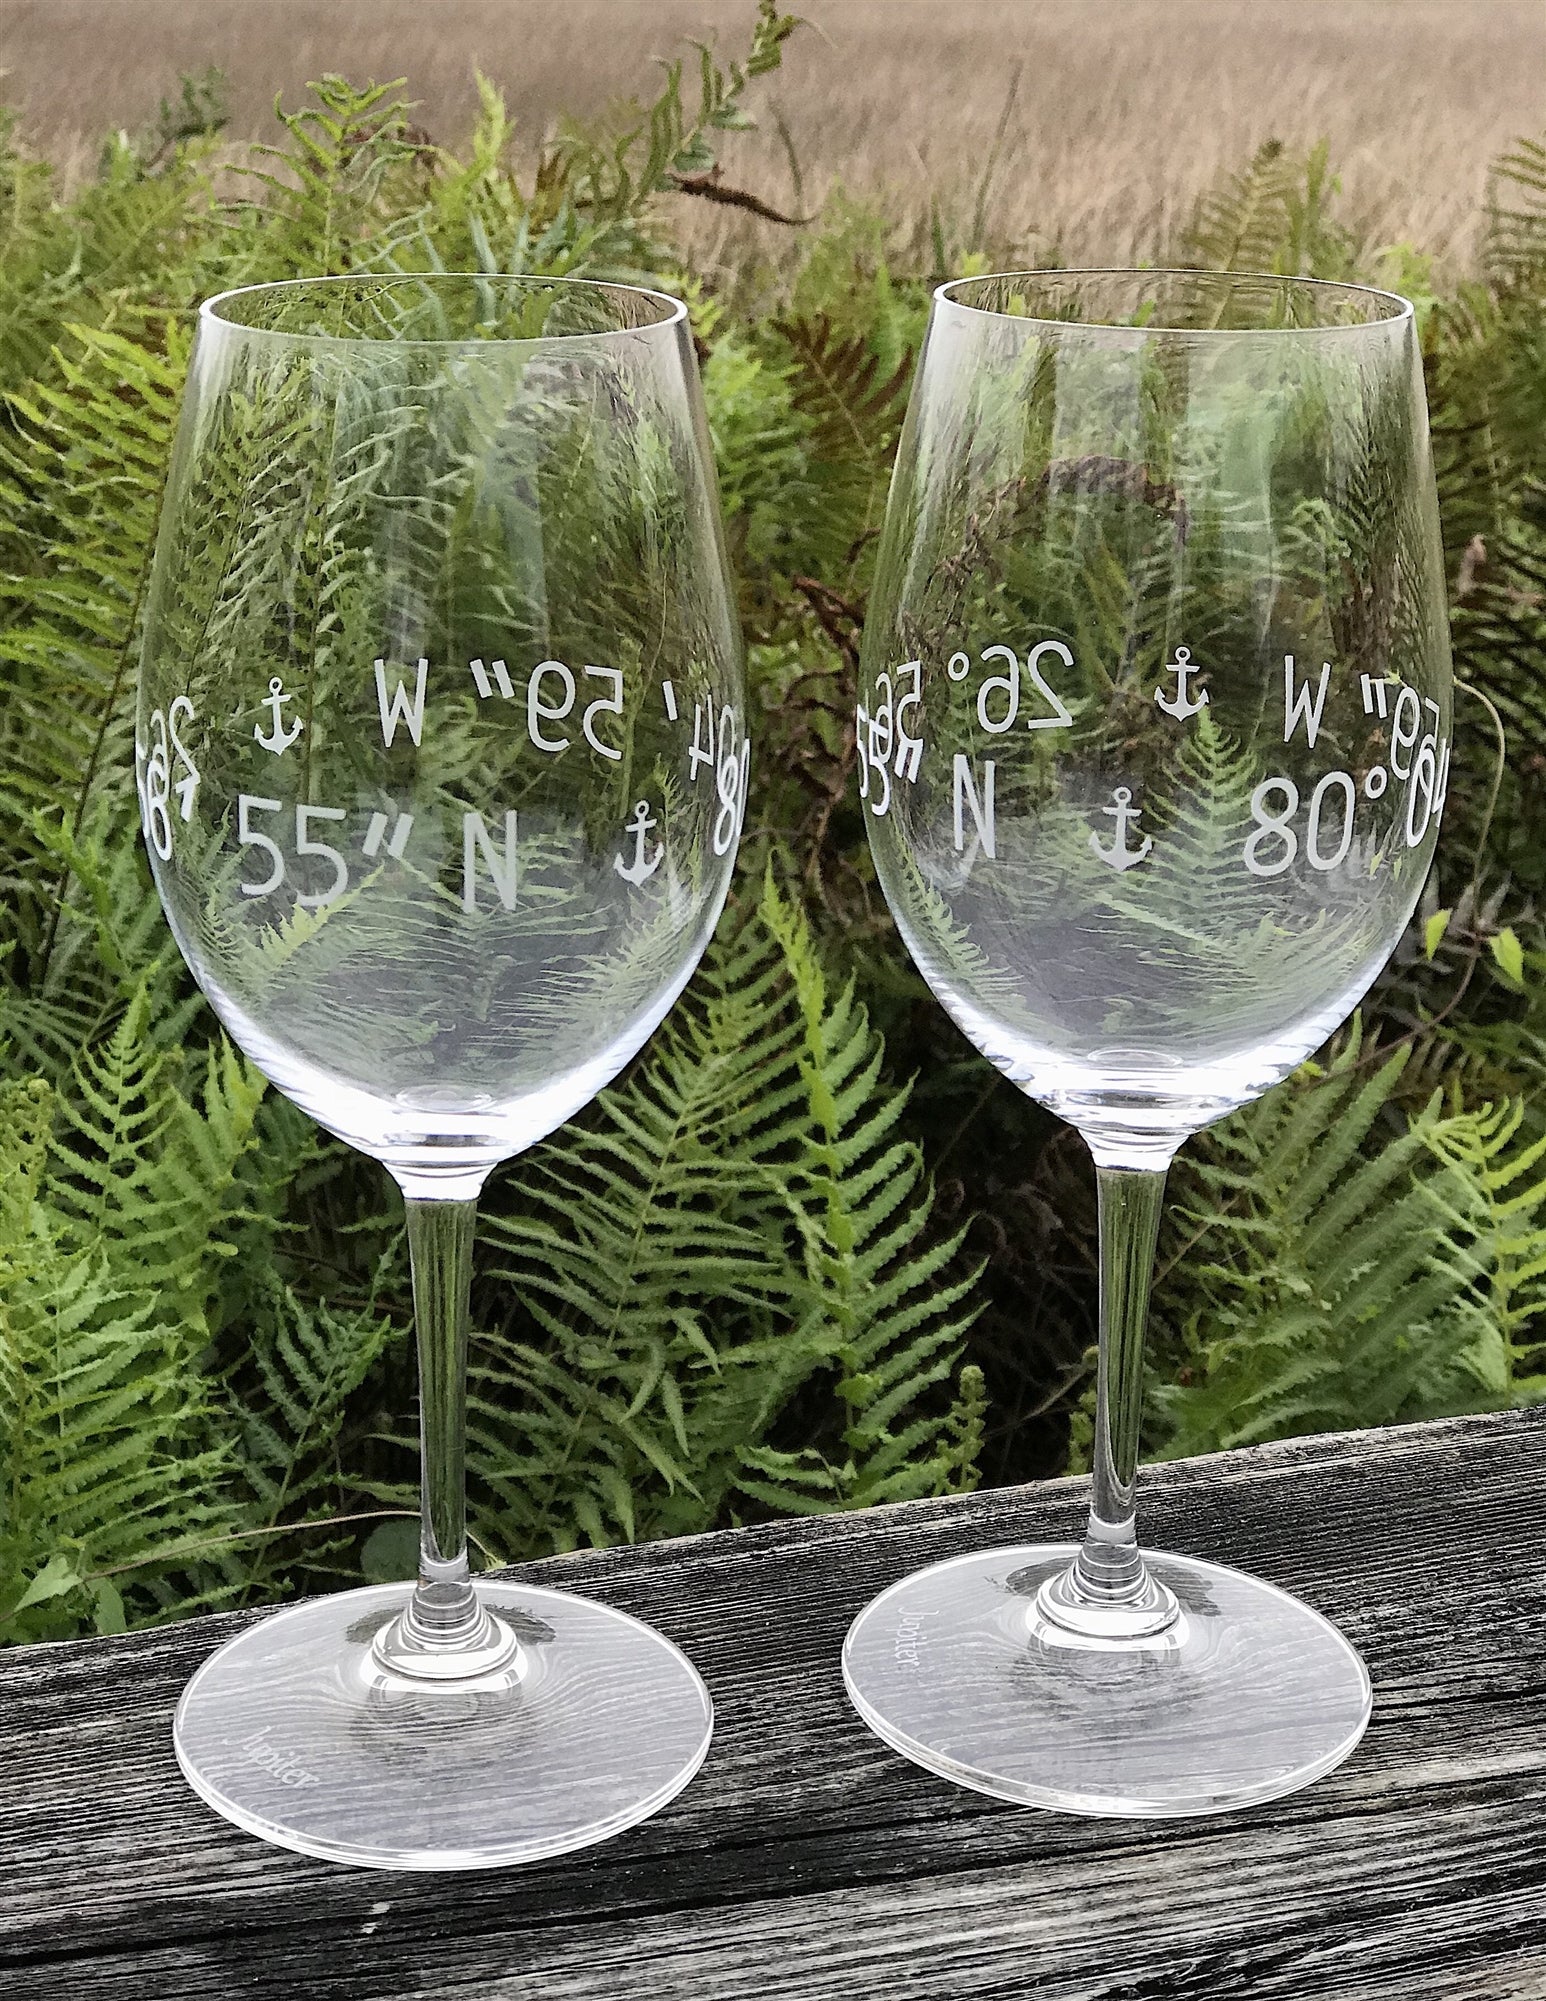 crystal glassware sets